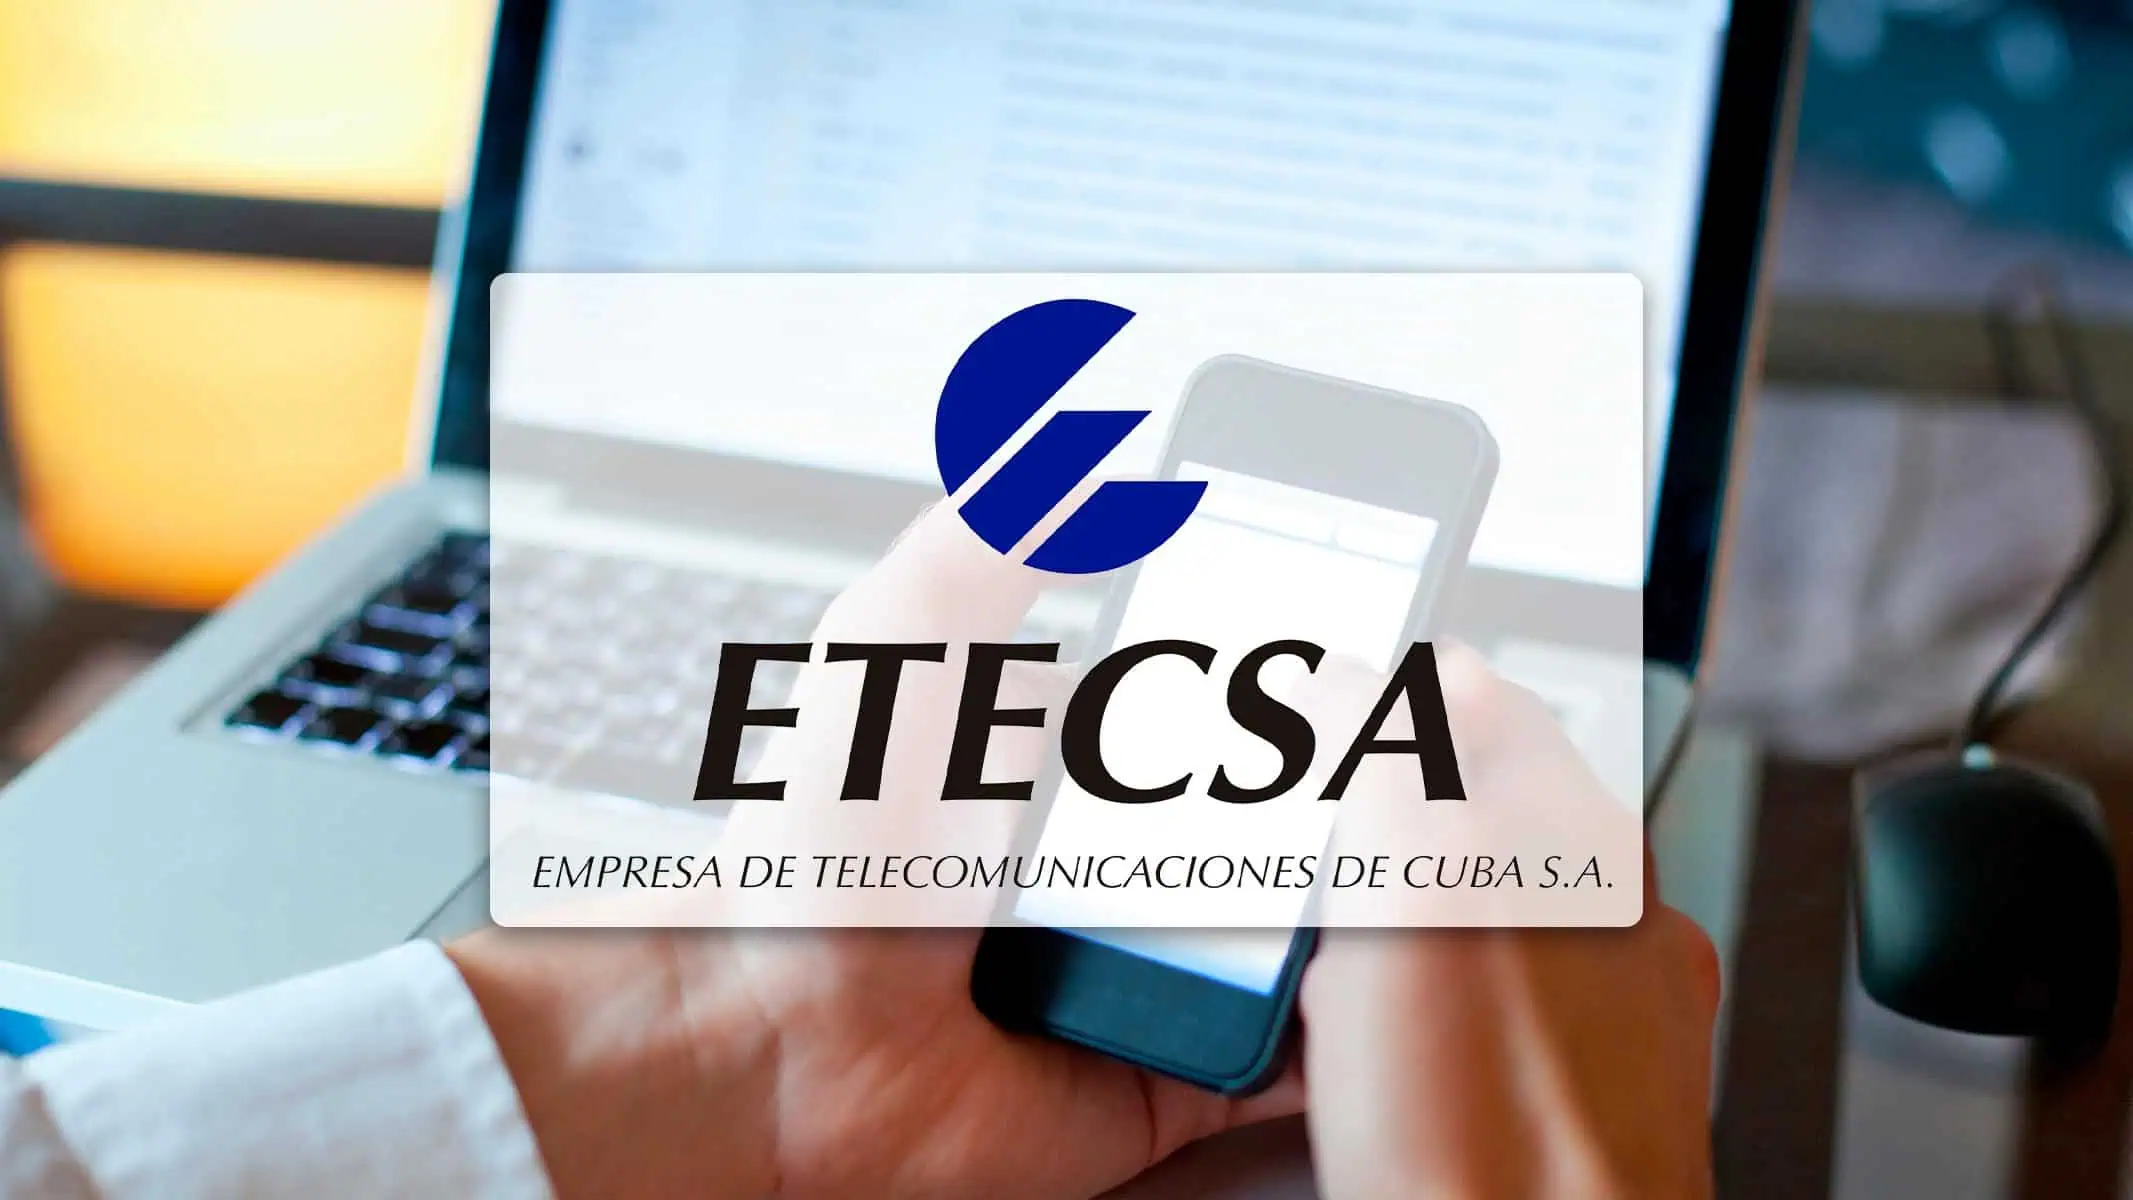 ETECSA Mejora sus Servicios en el Centro de Cuba: ¡Descubre las Nuevas Funcionalidades!